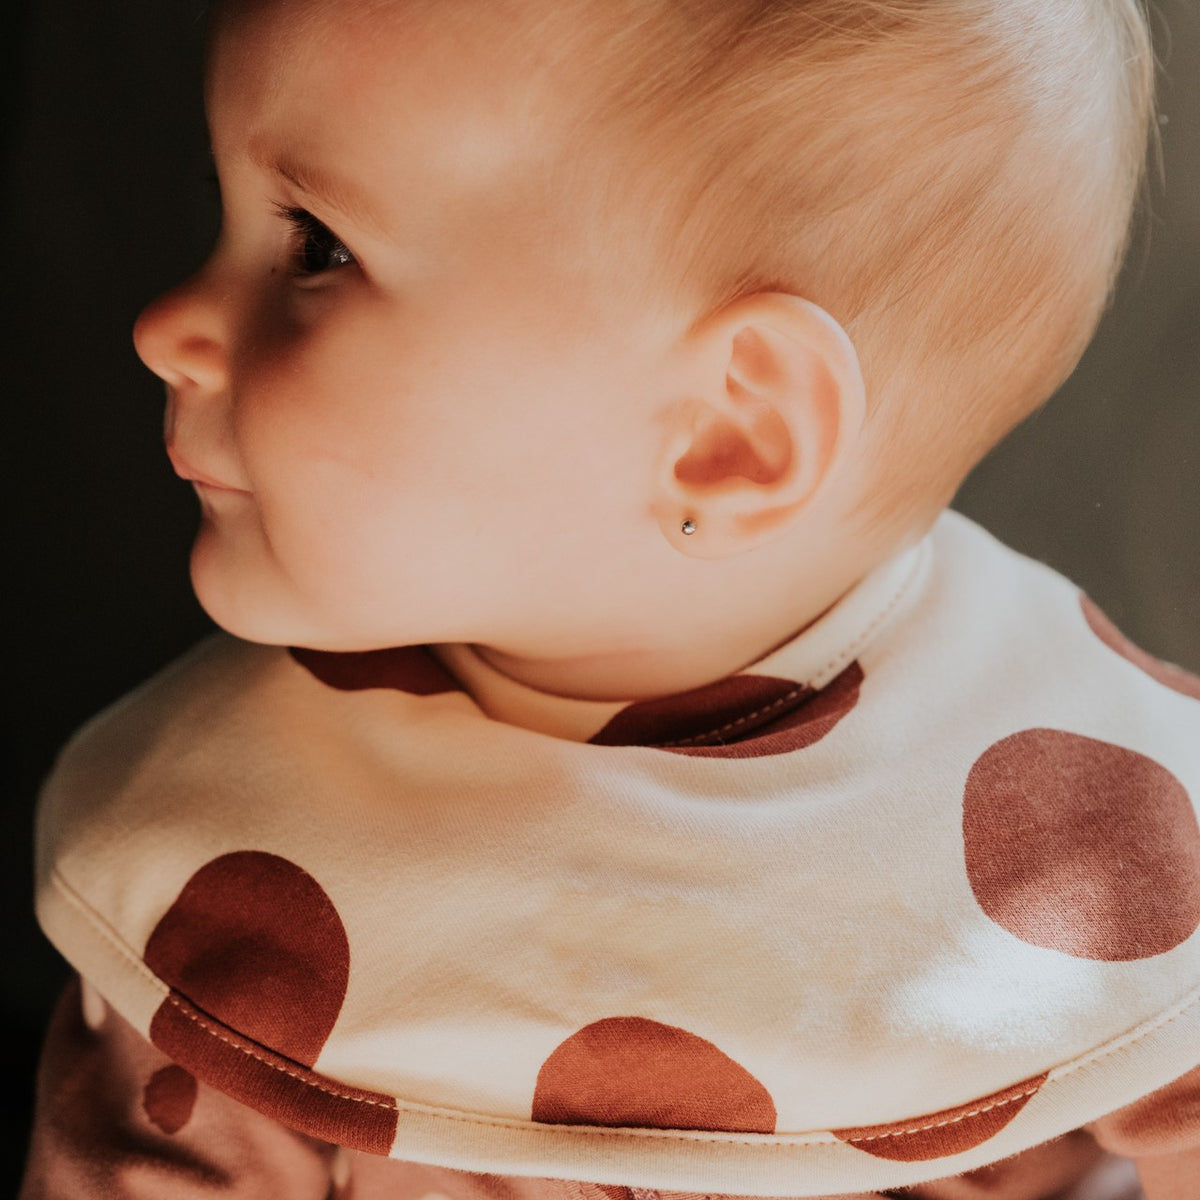 Pyjama bébé garçon avec ouverture au dos 100% coton